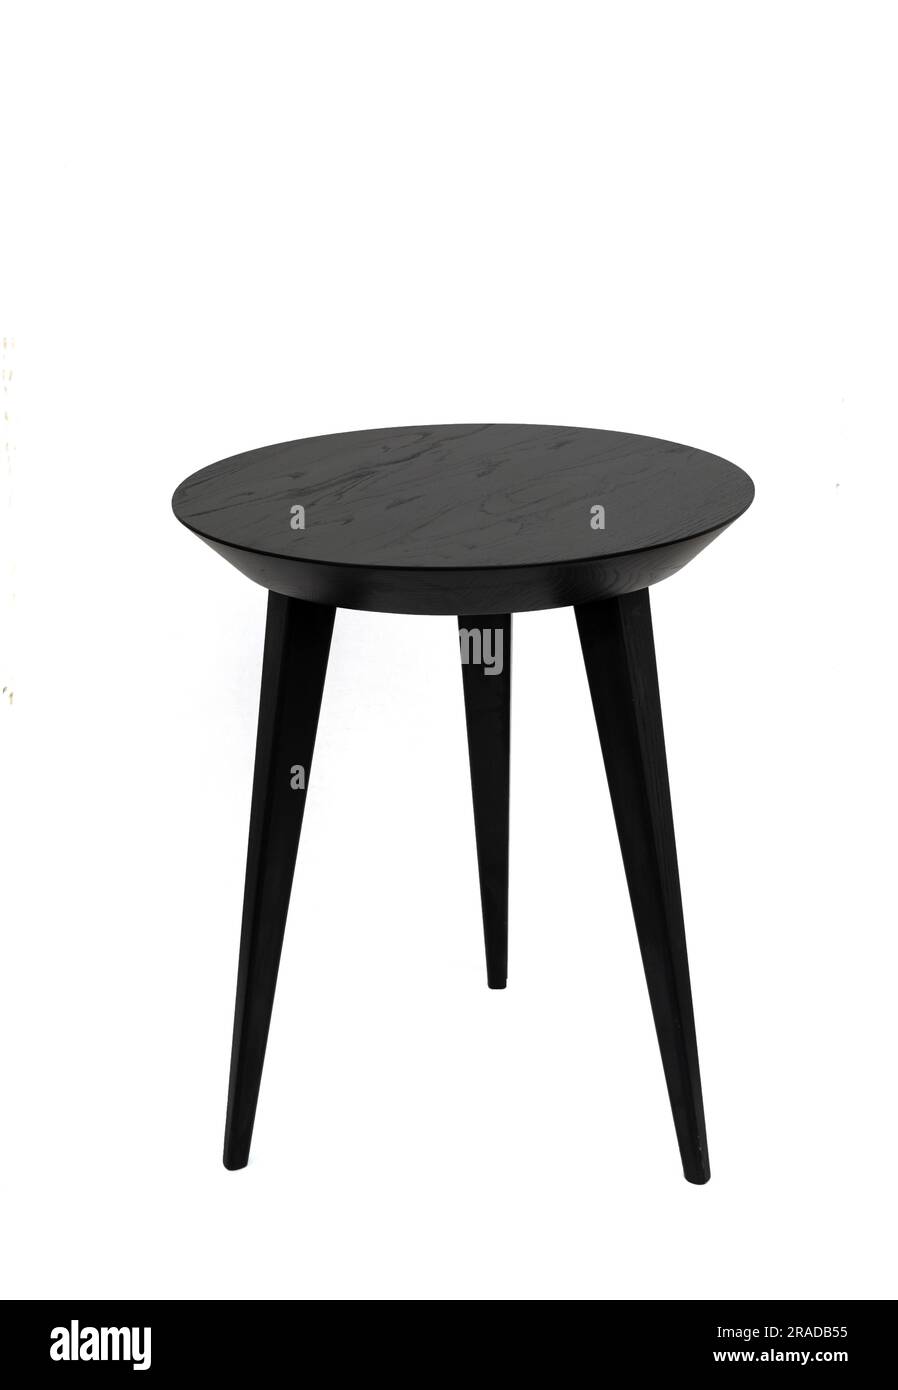 Mesa de centro redonda de madera negra en tres patas con una hermosa textura de madera. Aislado sobre un fondo blanco Foto de stock